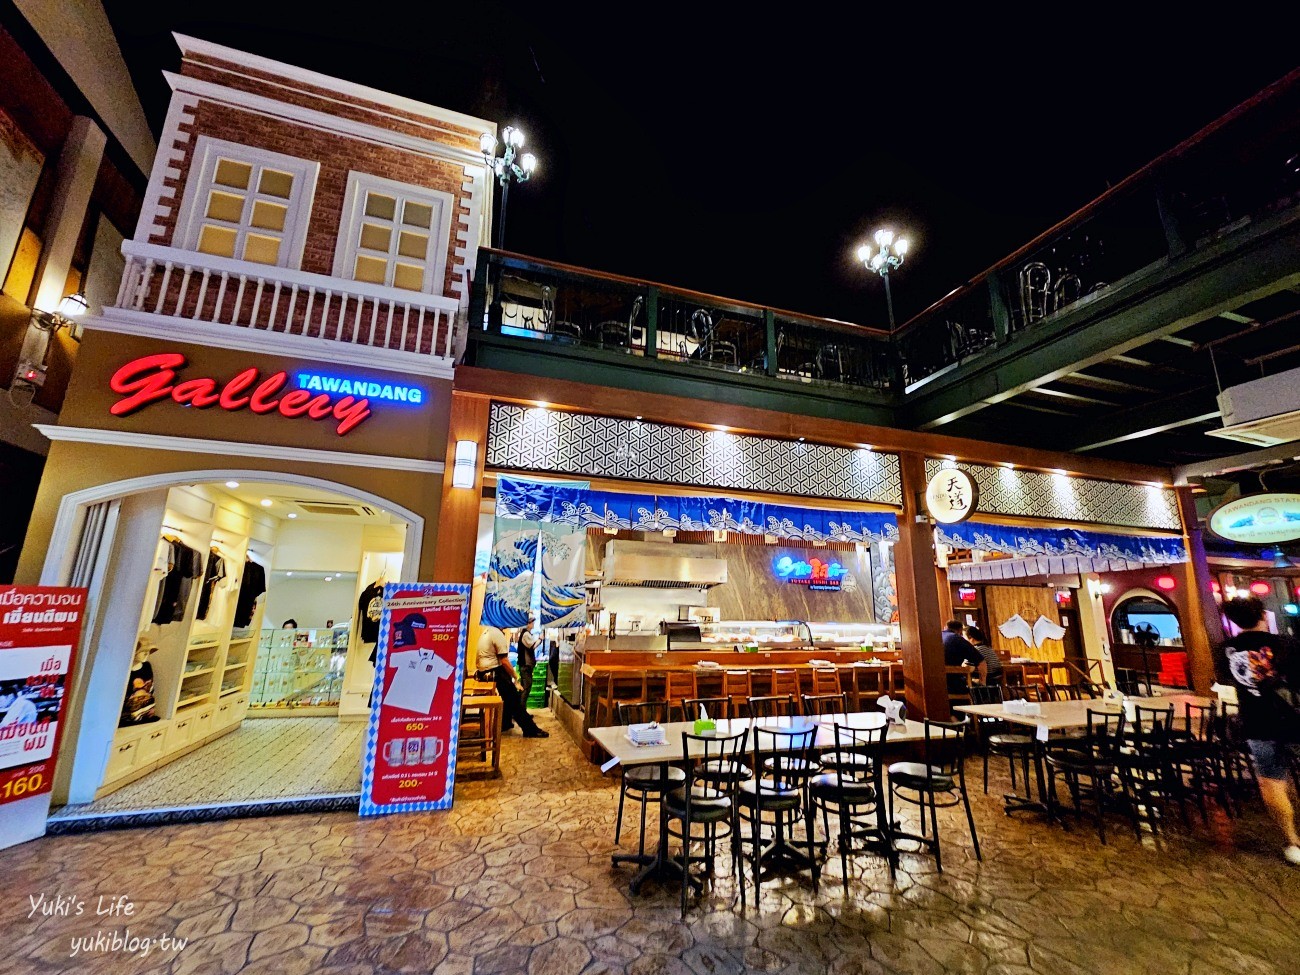 曼谷酒吧餐廳【Tawandang German Brewery】現場大舞台表演氣氛超嗨~有冷氣超推薦必去 - yukiblog.tw